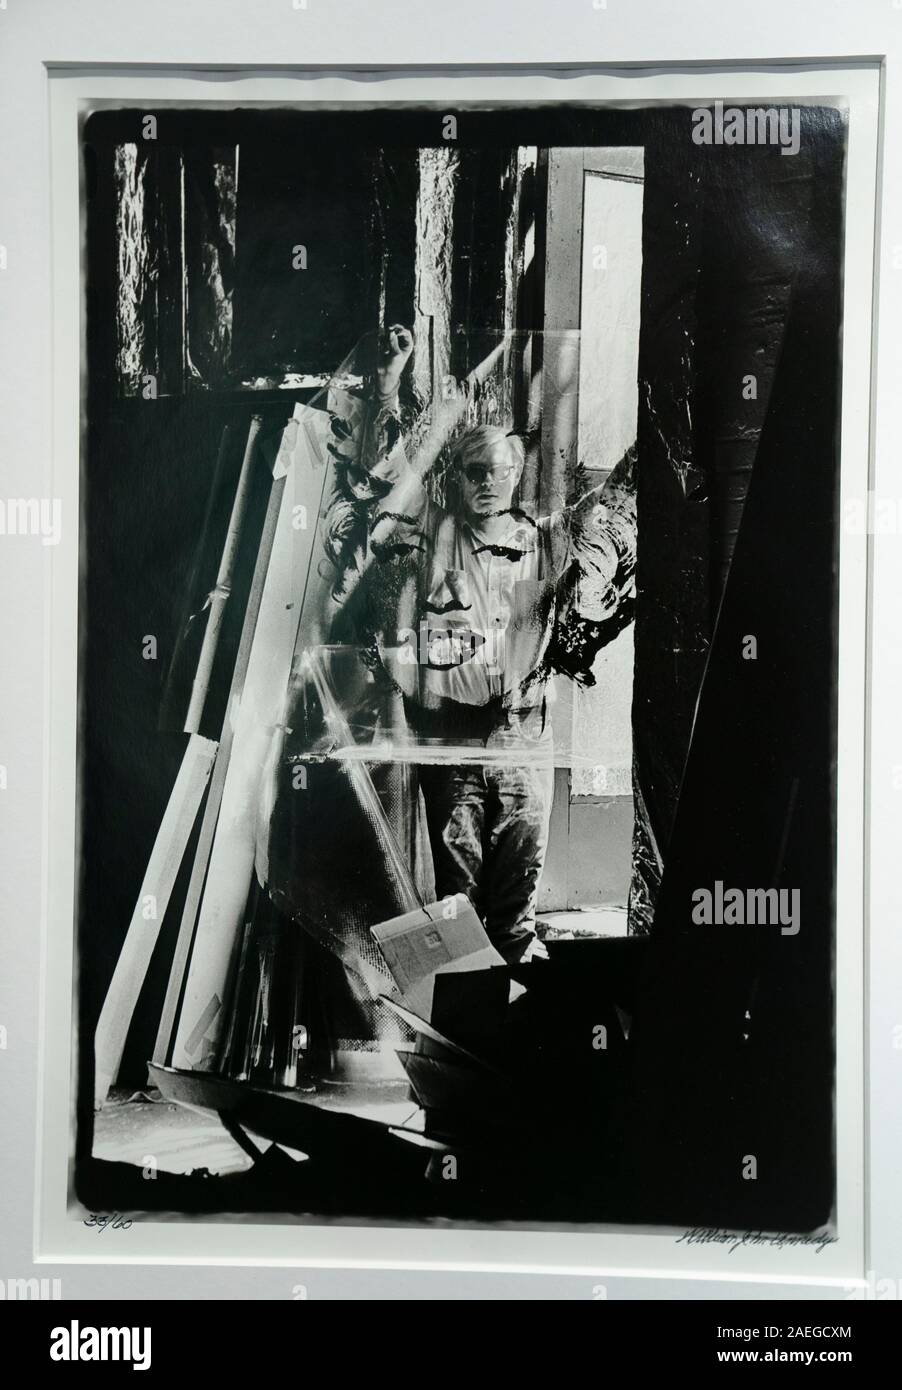 Andy Warhol holding "acetato arilyn ho' presi nel 1964 presso lo stabilimento di New York, uno di un numero unico di firmato e pubblicamente mai visto prima le immagini di Andy Warhol e il suo lavoro, fotografato dal suo intimo amico e confidente William John Kennedy, che sono stati rilasciati per la vendita compreso nel prezzo a partire da £ 5.000-£15.000 per stampa, presso la Voliera Art Gallery di Jesmond, Newcastle. Foto Stock